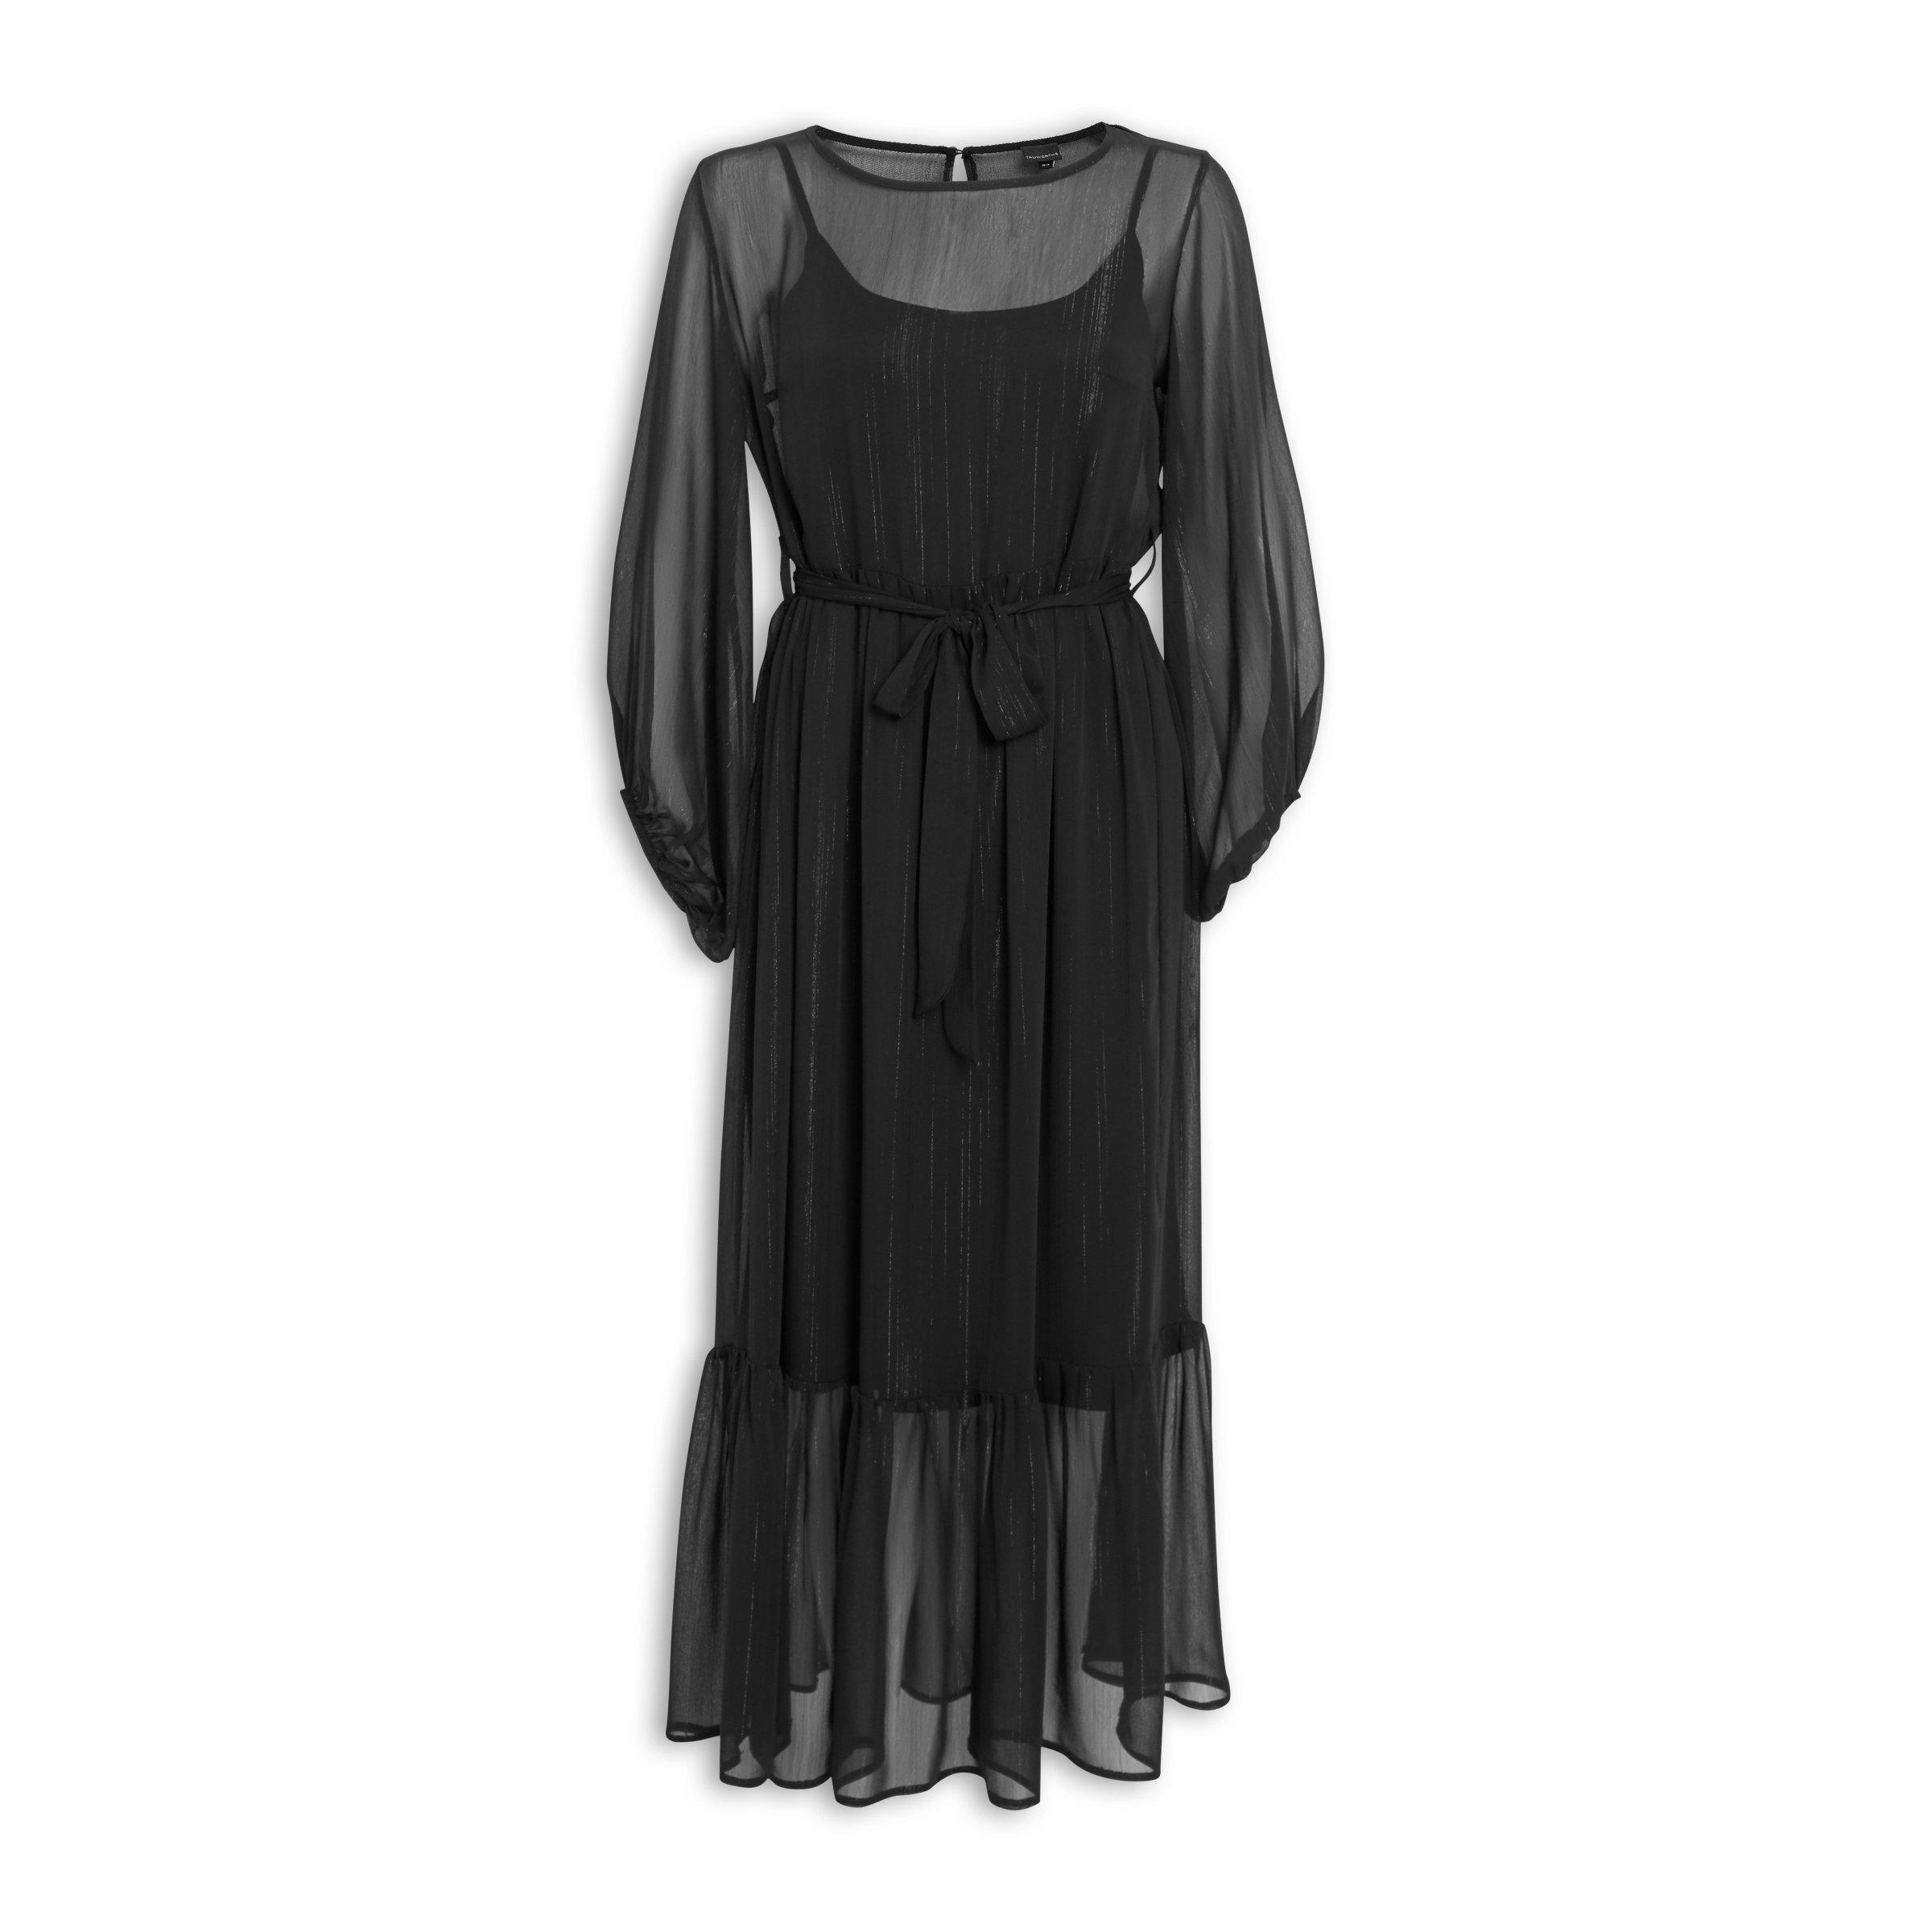 truworths black formal dresses